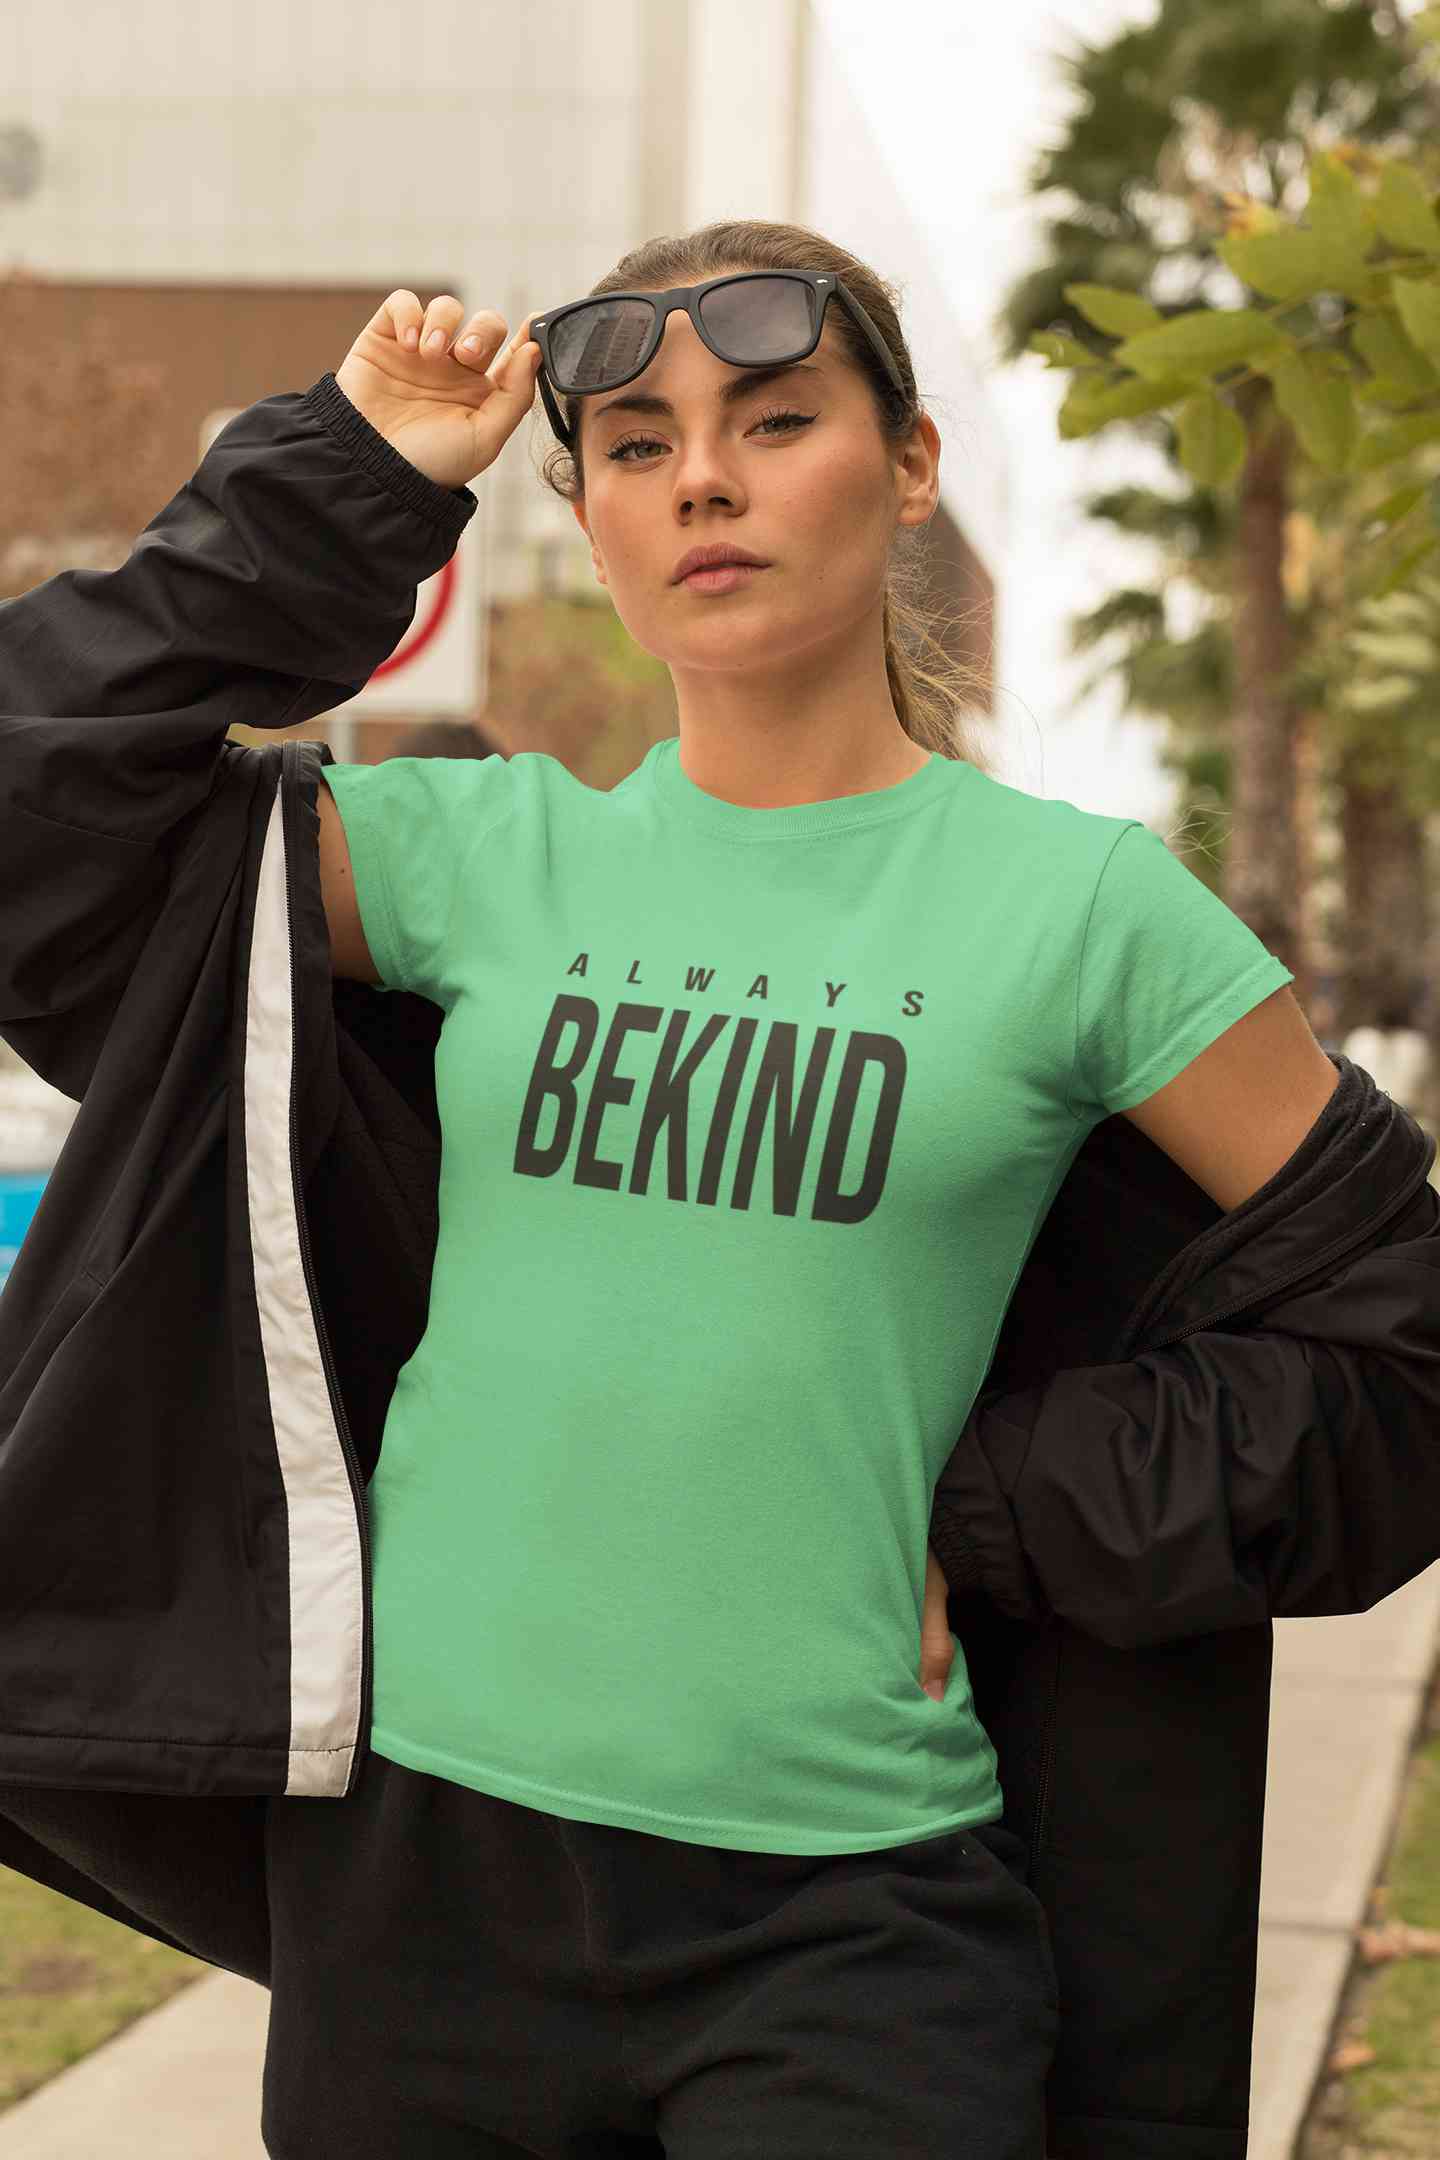 Always Bekind Women Half Sleeves T-shirt- FunkyTeesClub